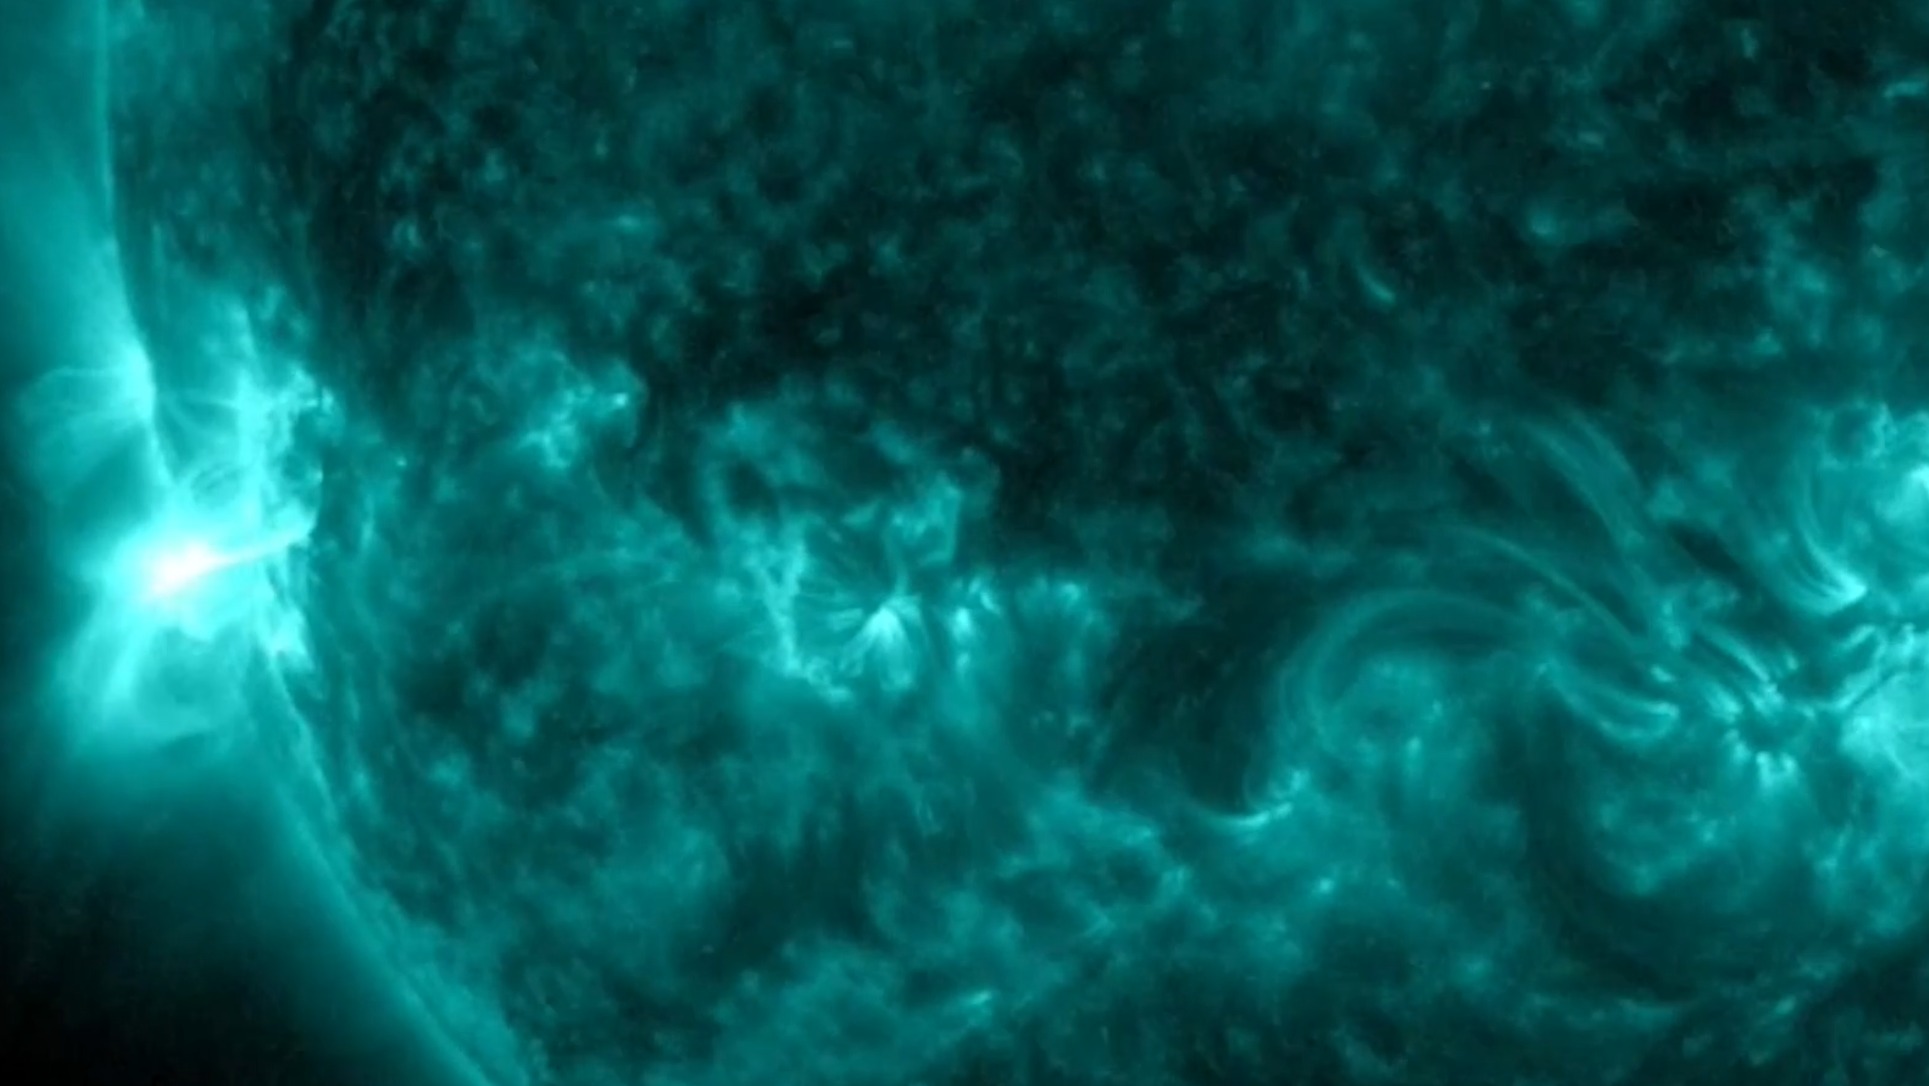 Обсерватория солнечной динамики NASA зафиксировала новоприбывшее солнечное пятно AR3341